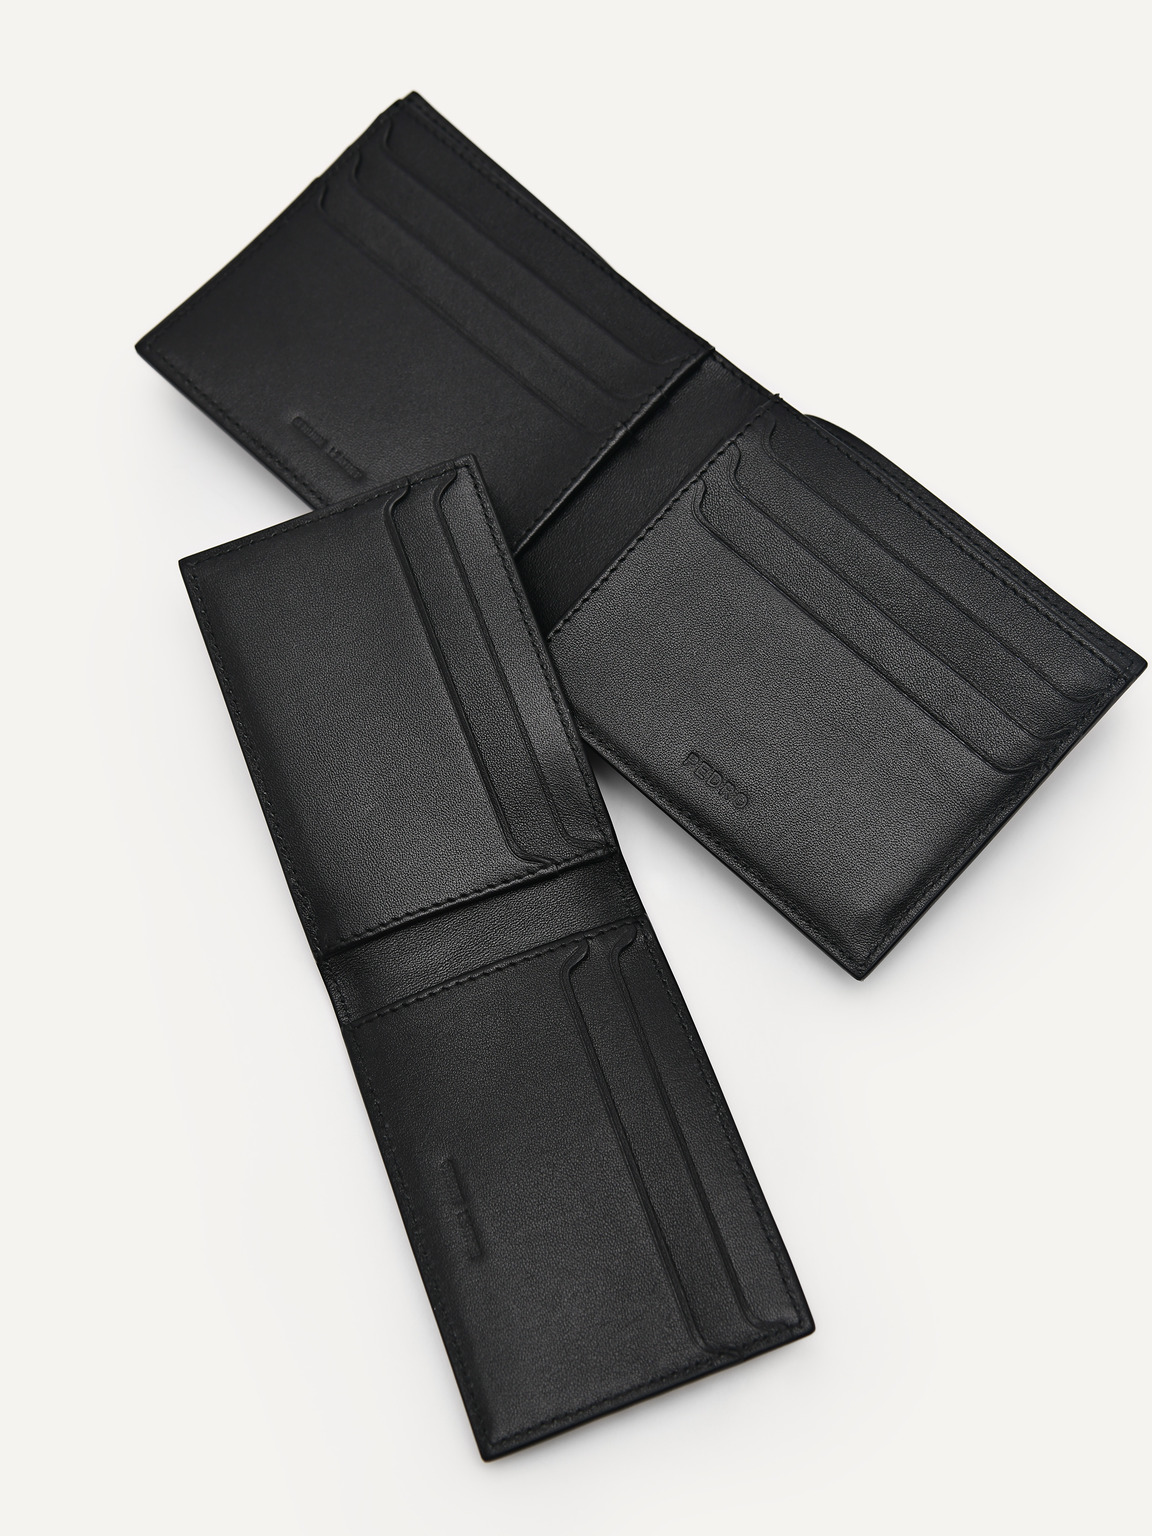 壓紋皮革雙折疊錢包帶貼袋, 黑色